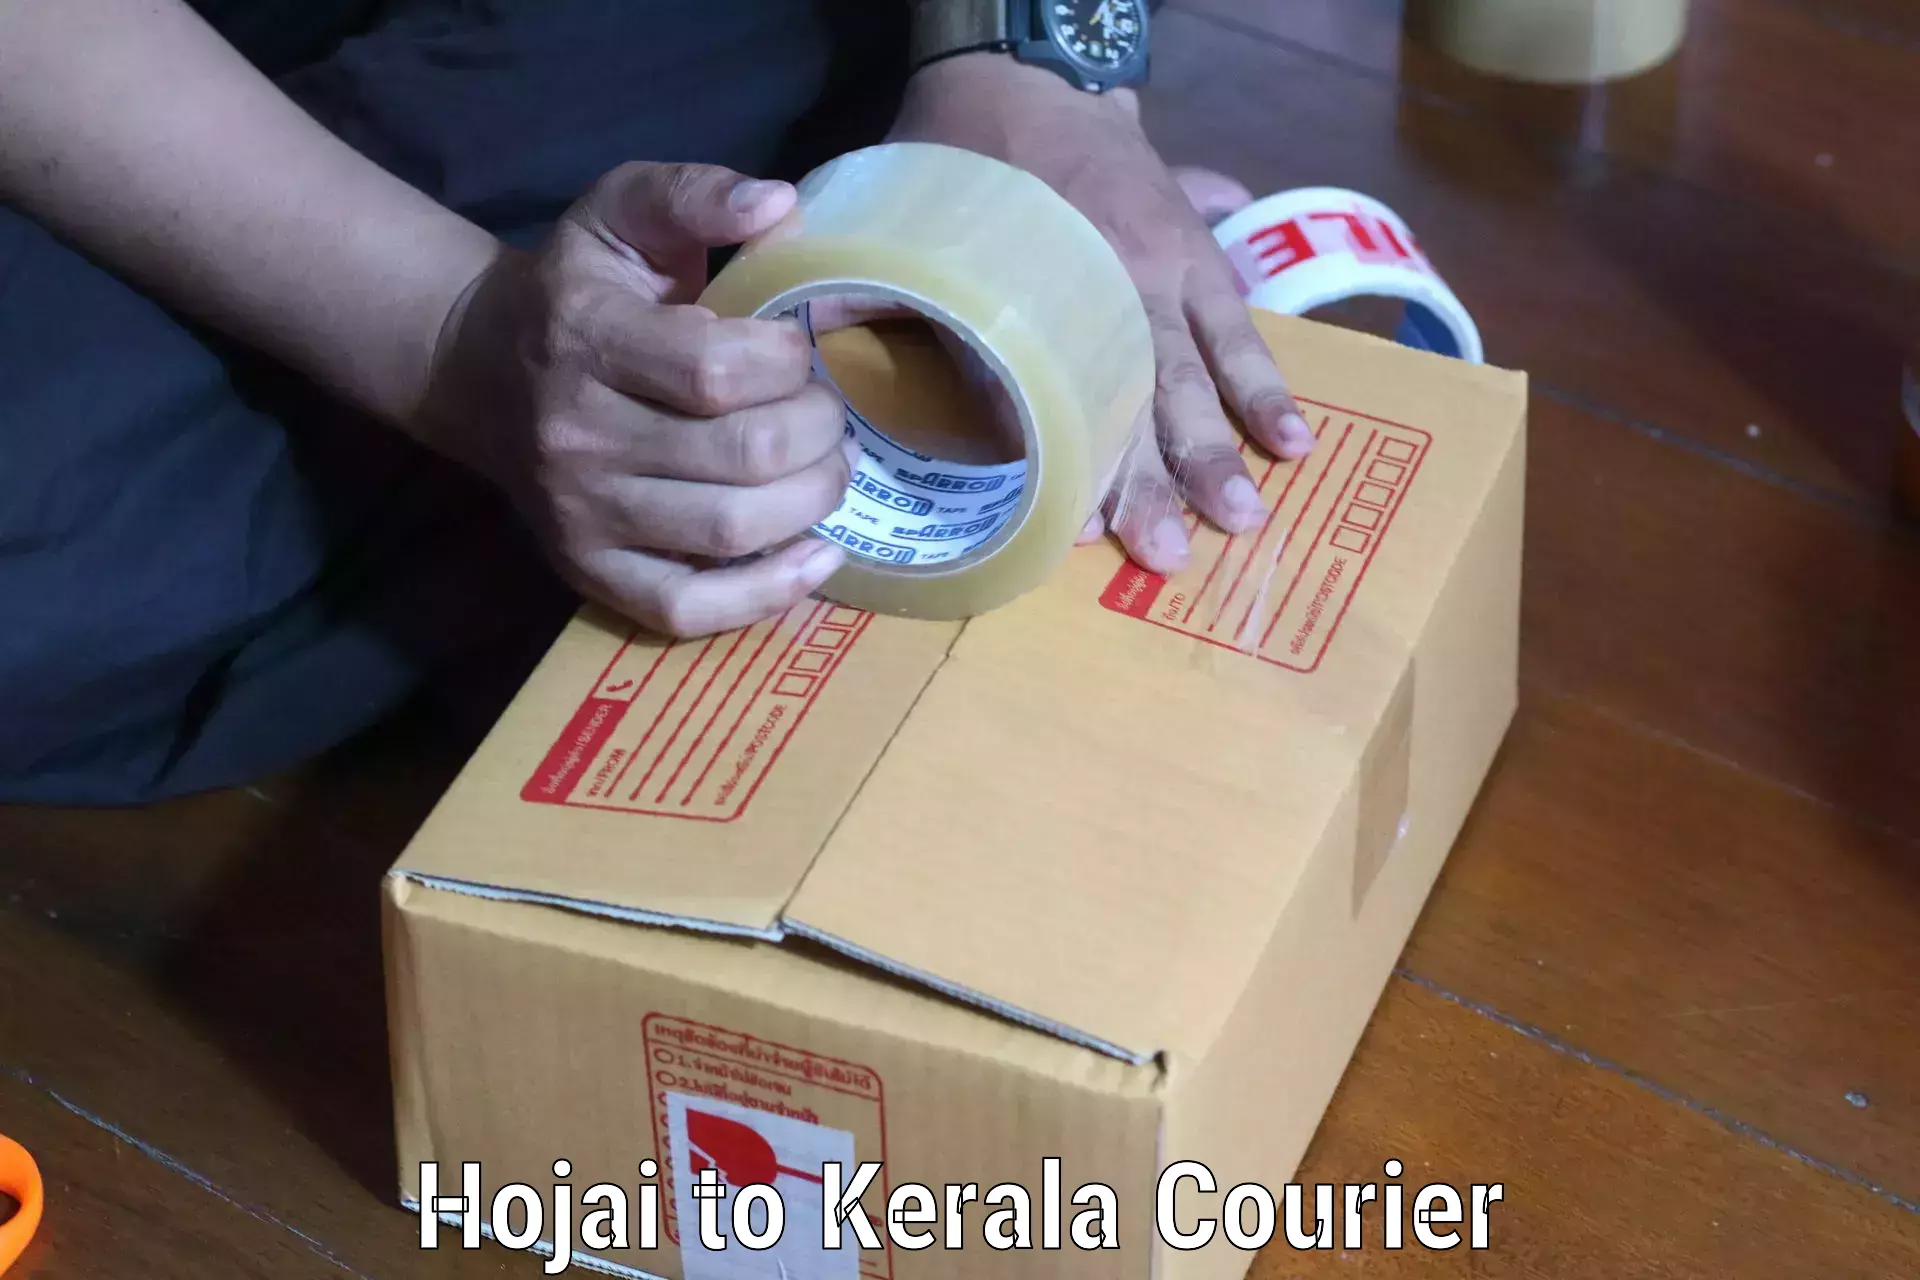 Multi-city courier Hojai to Kerala